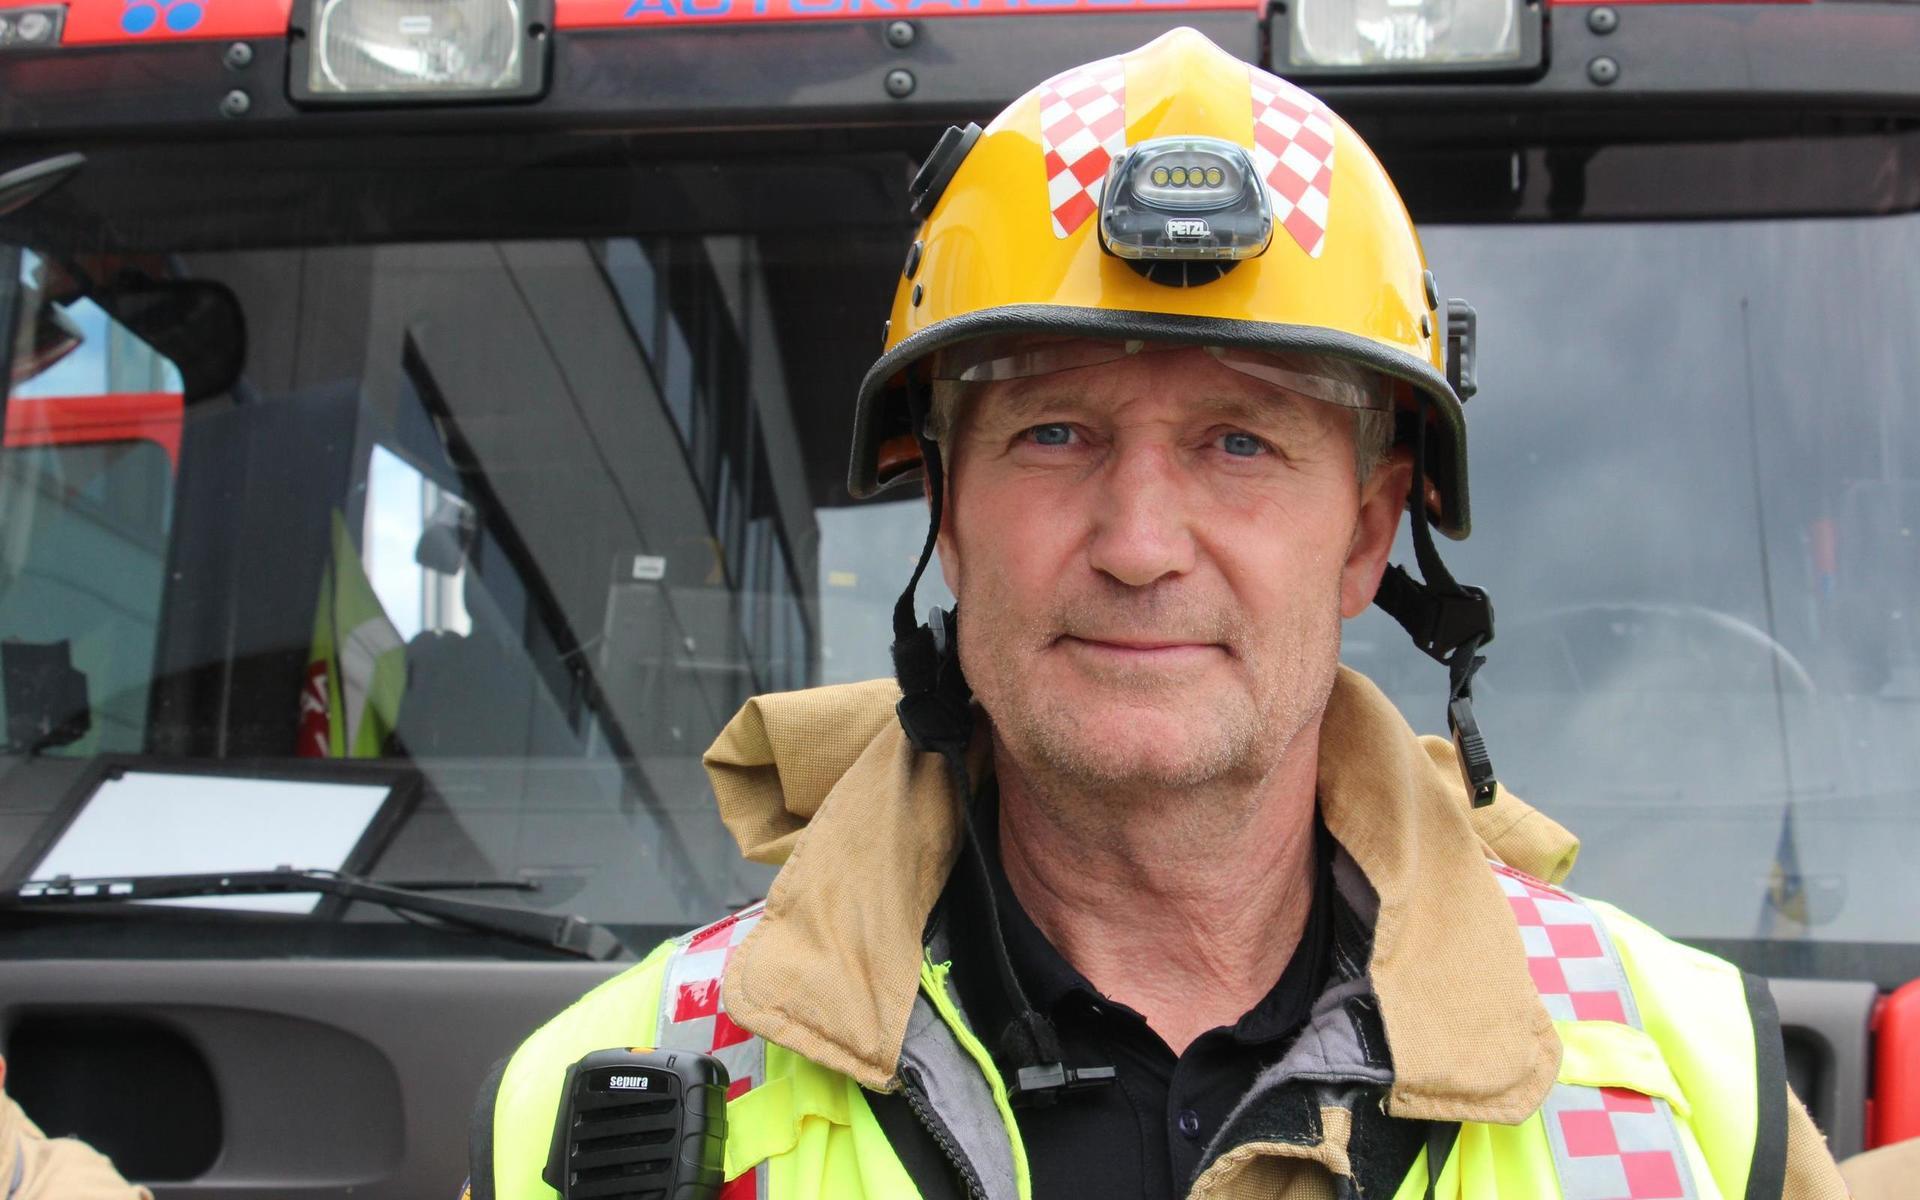 Räddningsledare Hans Schmidt på Räddningstjänsten Storgöteborg säger att det som hänt är helt oacceptabelt.